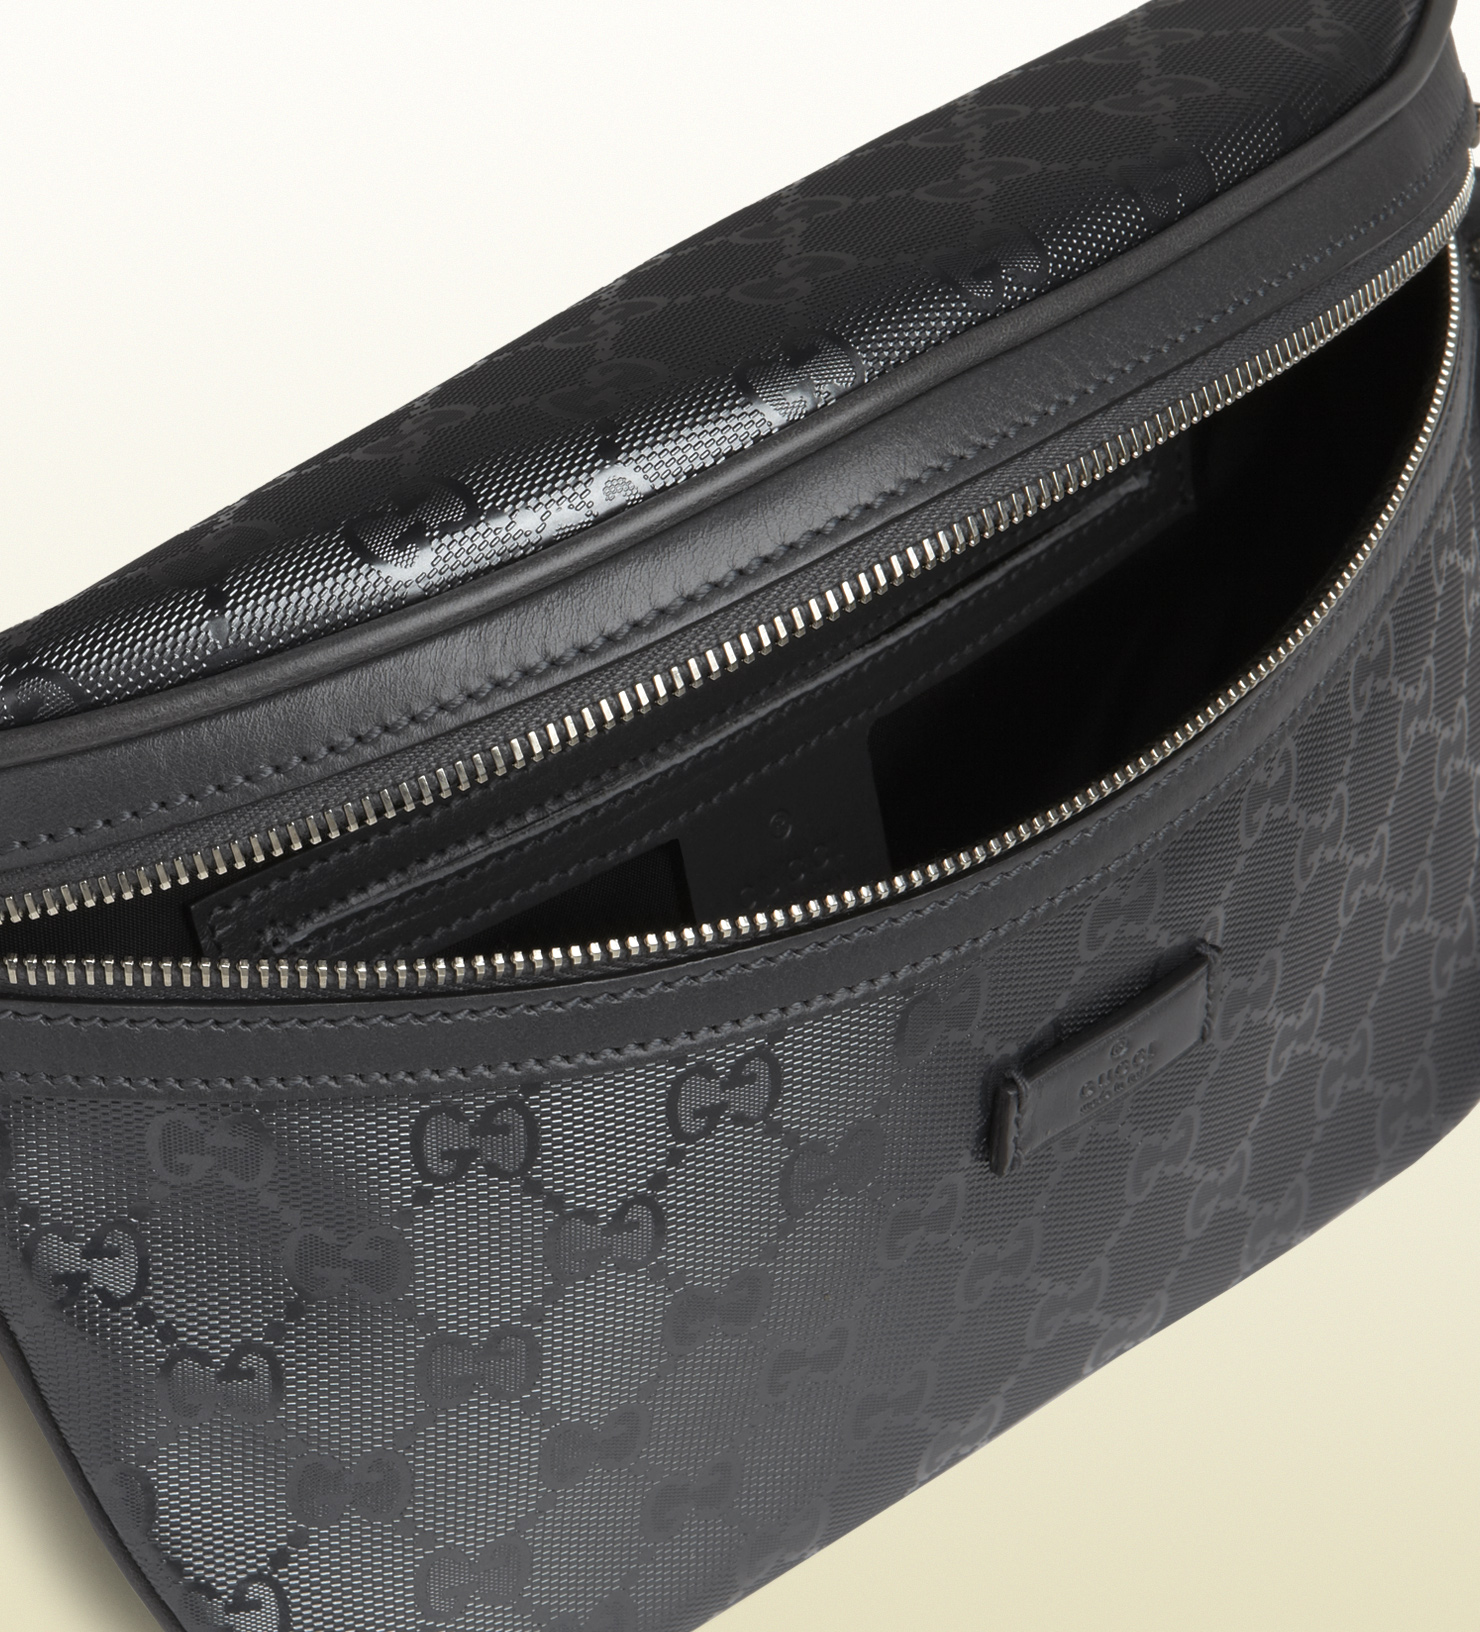 Gucci Gg Imprime Belt Bag in Black for Men - Lyst